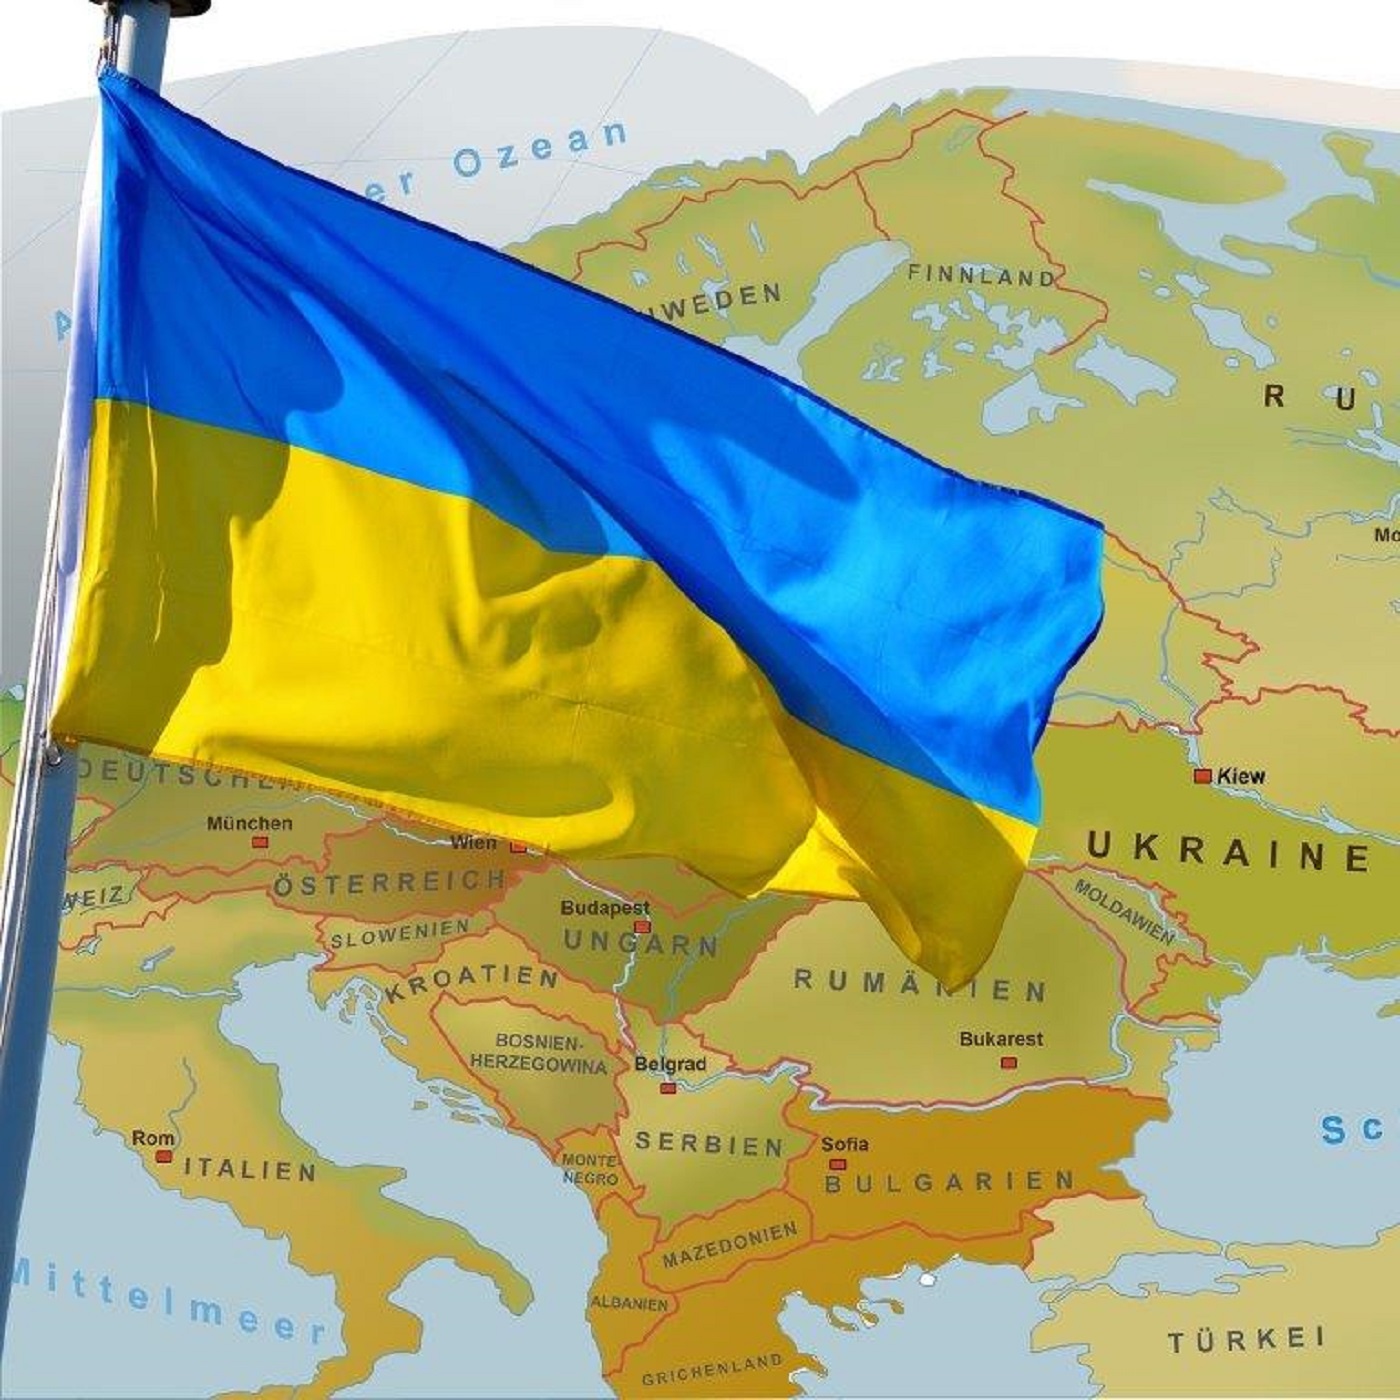 Ukrainisch lernen - ти де?